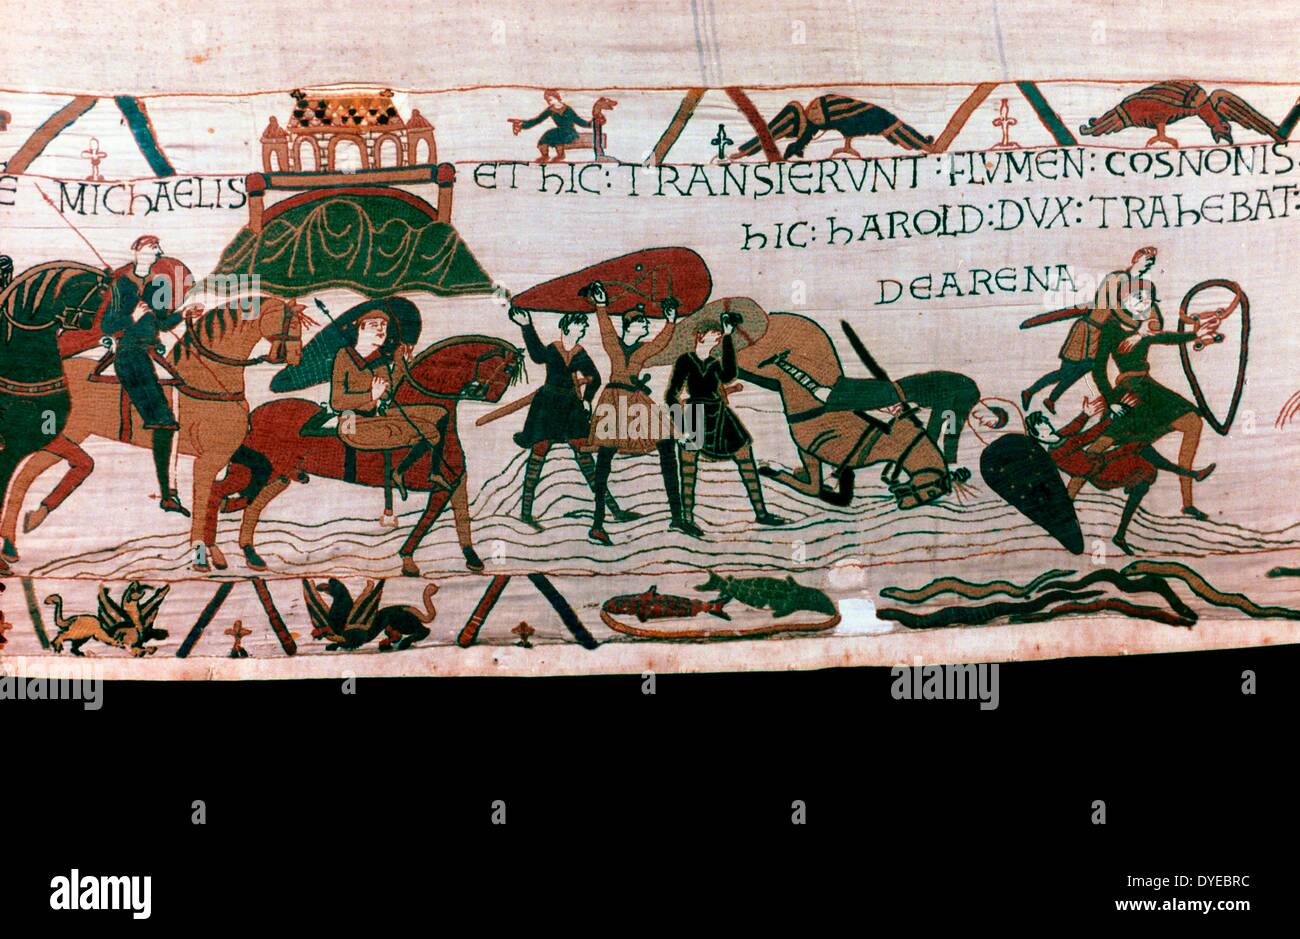 Scena dall'Arazzo di Bayeux un panno ricamato quasi 70 metri (230 ft) di lunghezza, che descrive gli eventi che portano fino alla conquista normanna dell'Inghilterra in materia di Guglielmo duca di Normandia e Harold, Earl del Wessex, successivamente re d'Inghilterra, e culminata nella battaglia di Hastings in 1066 Foto Stock